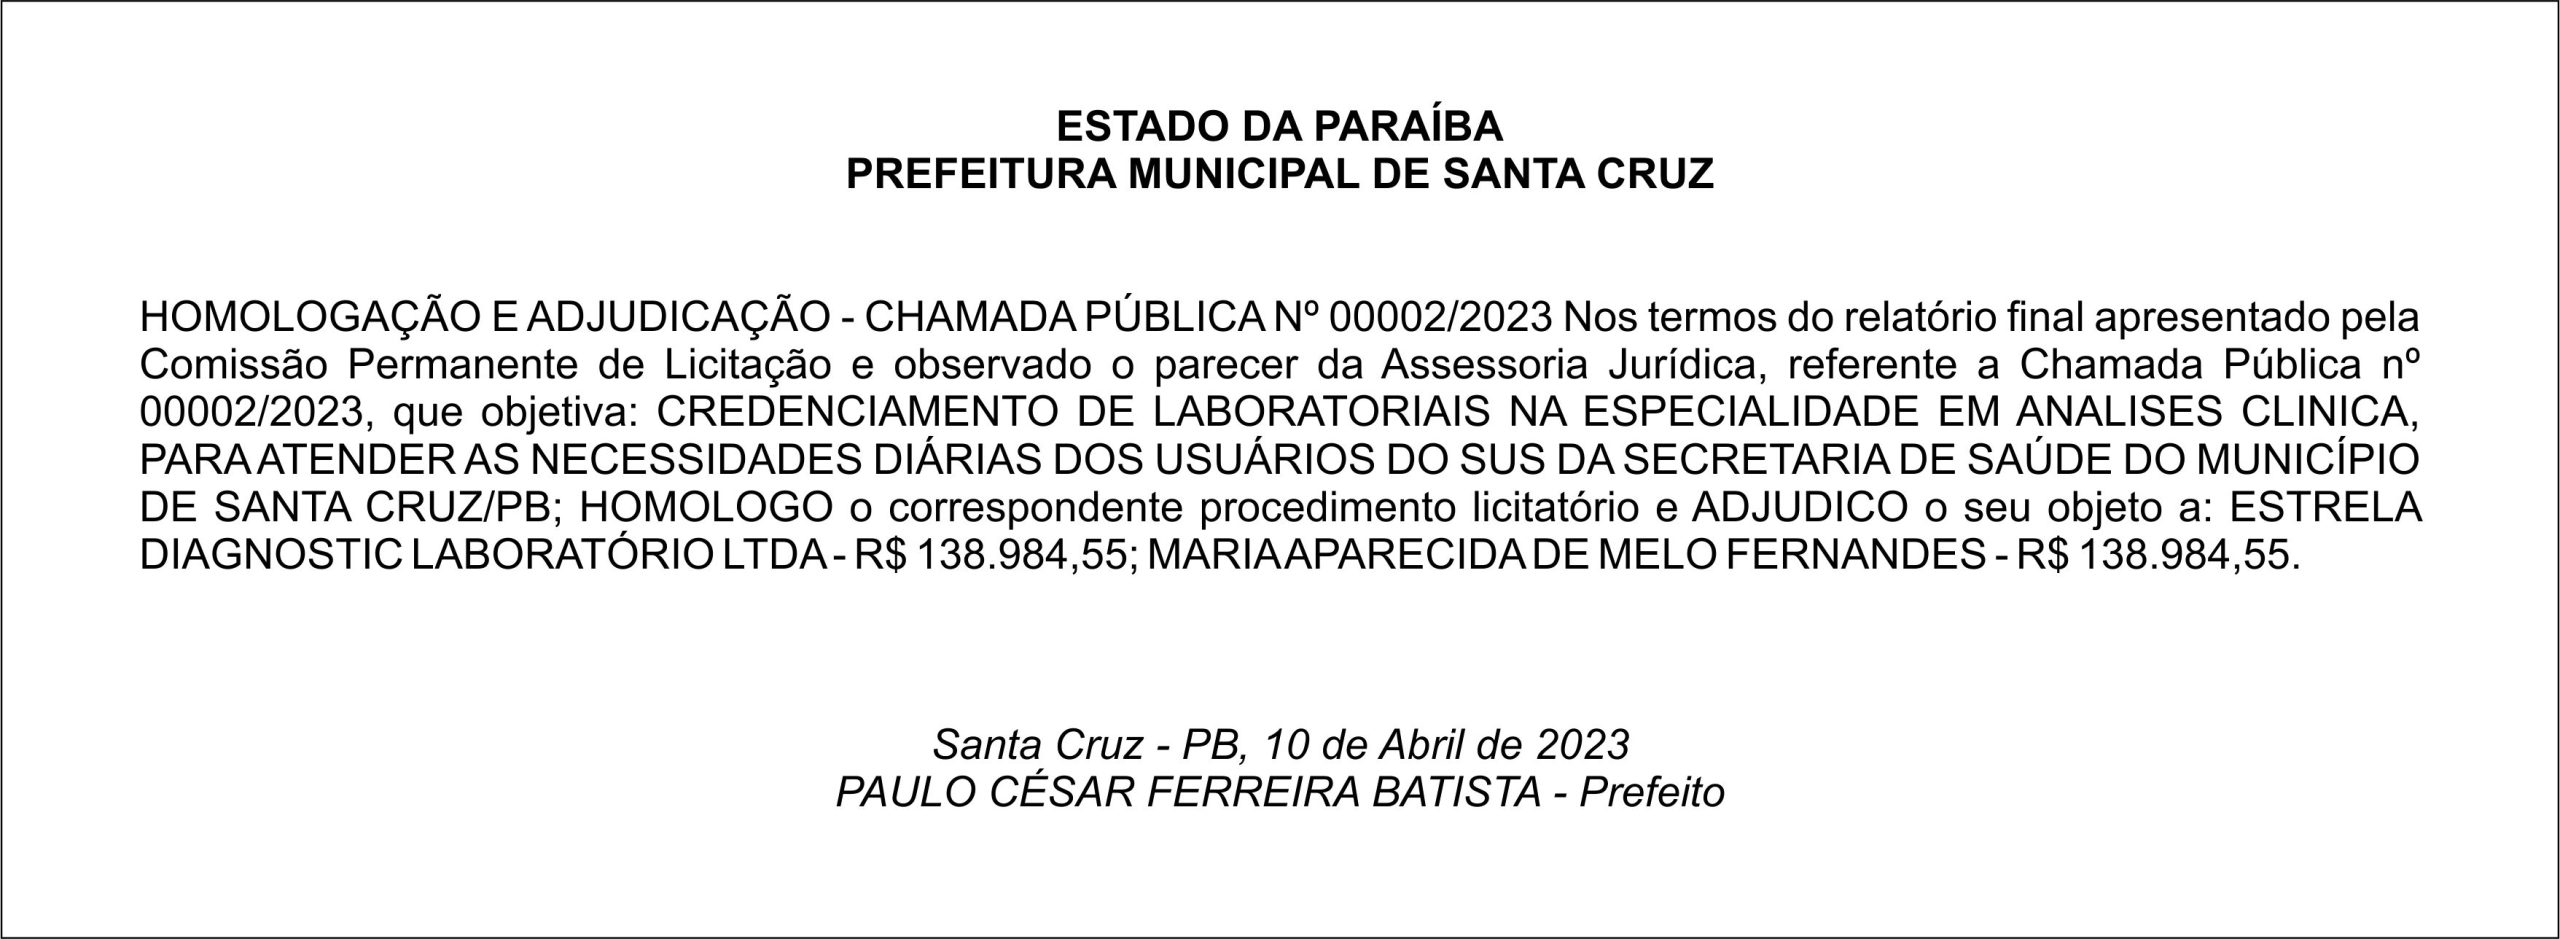 PREFEITURA MUNICIPAL DE SANTA CRUZ – HOMOLOGAÇÃO E ADJUDICAÇÃO – CHAMADA PÚBLICA Nº 00002/2023